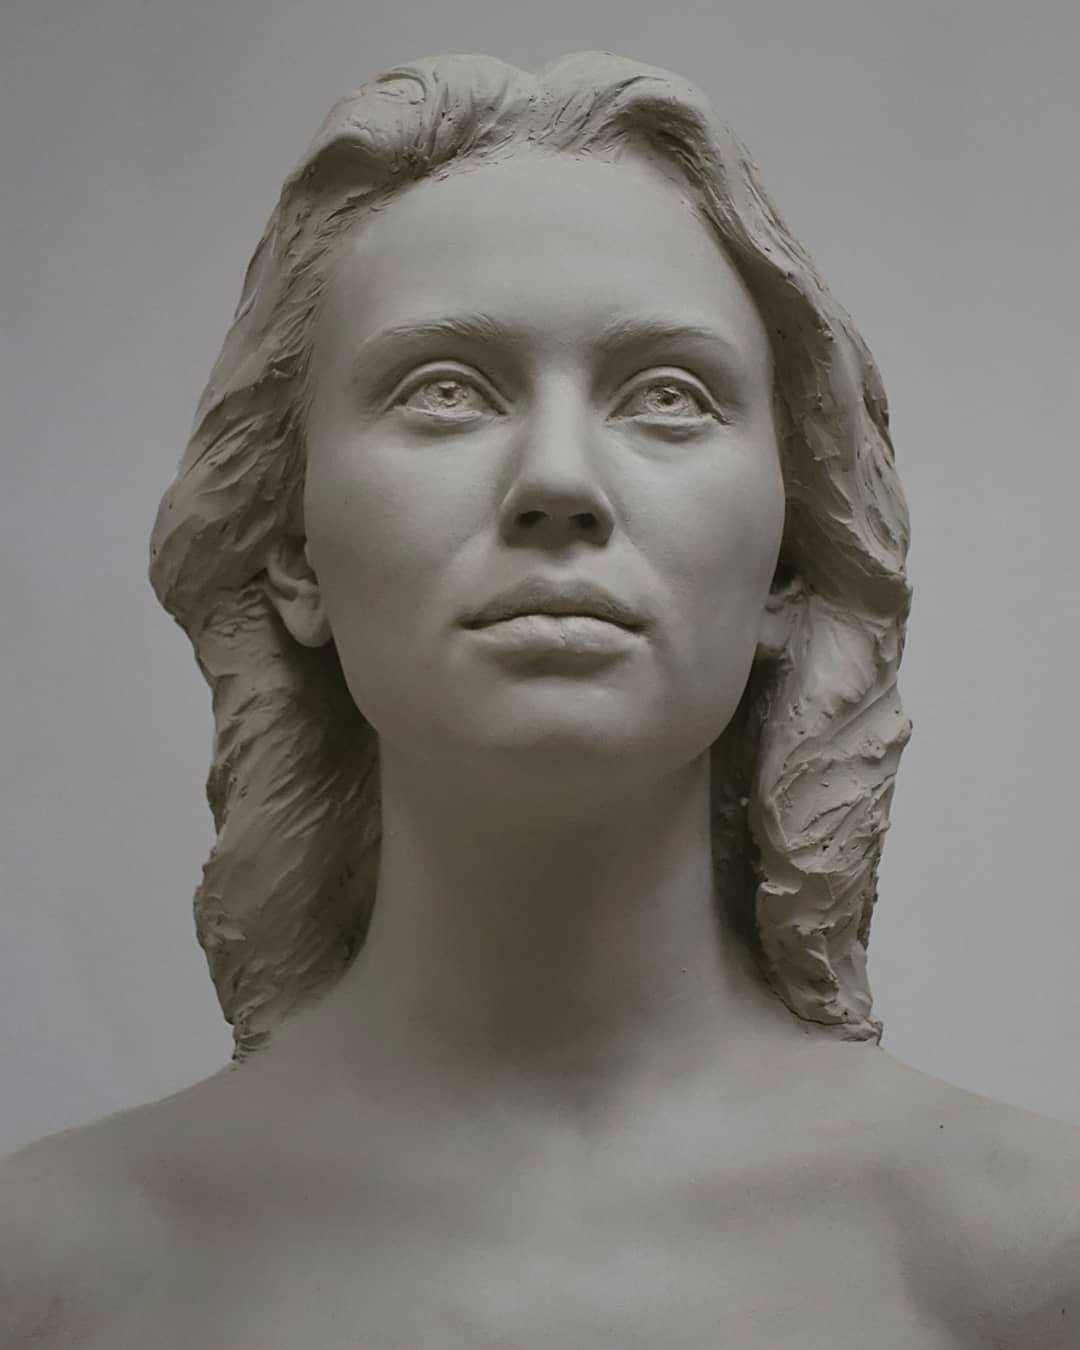 Fantastic Sculptural Portraits By Laurent Mallamaci (2)